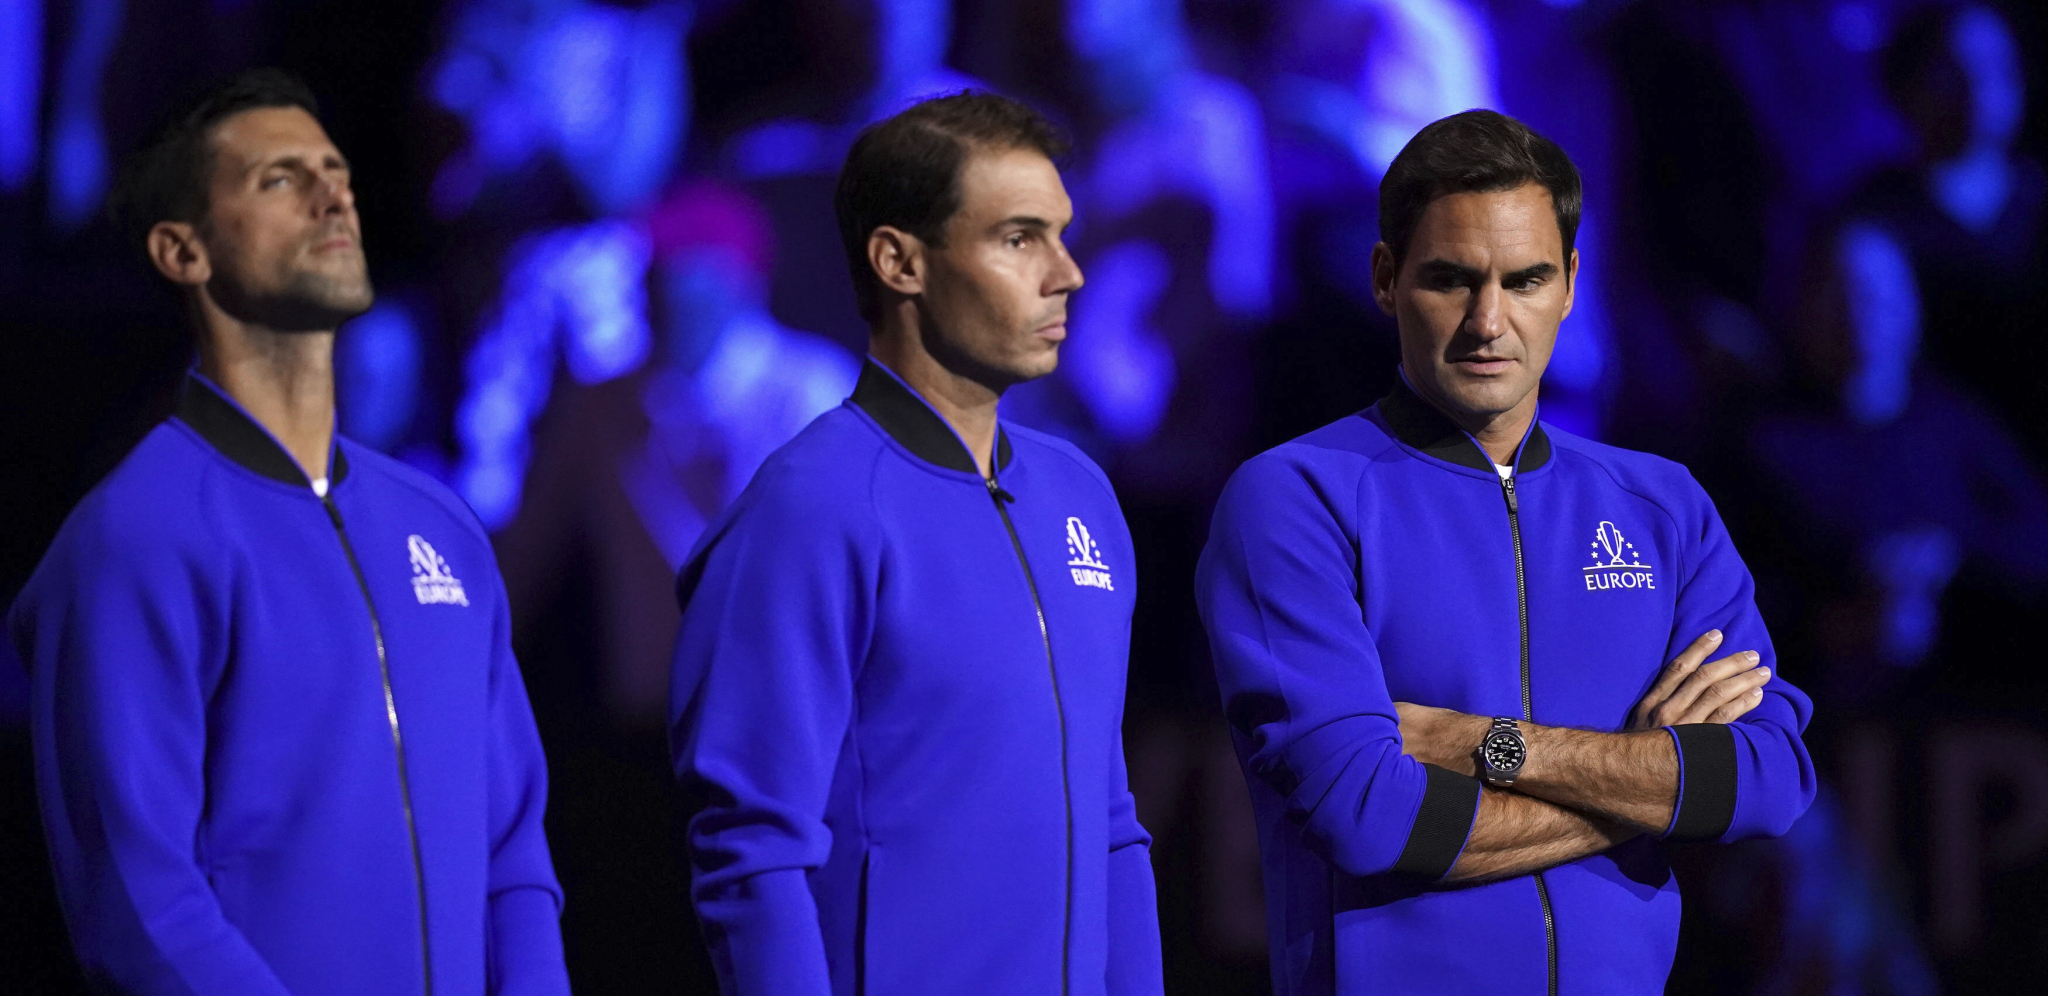 ĐOKOVIĆ REŠIO DA PROGOVORI Novak iskreno otkrio sve o odnosu njega, Nadala i Federera